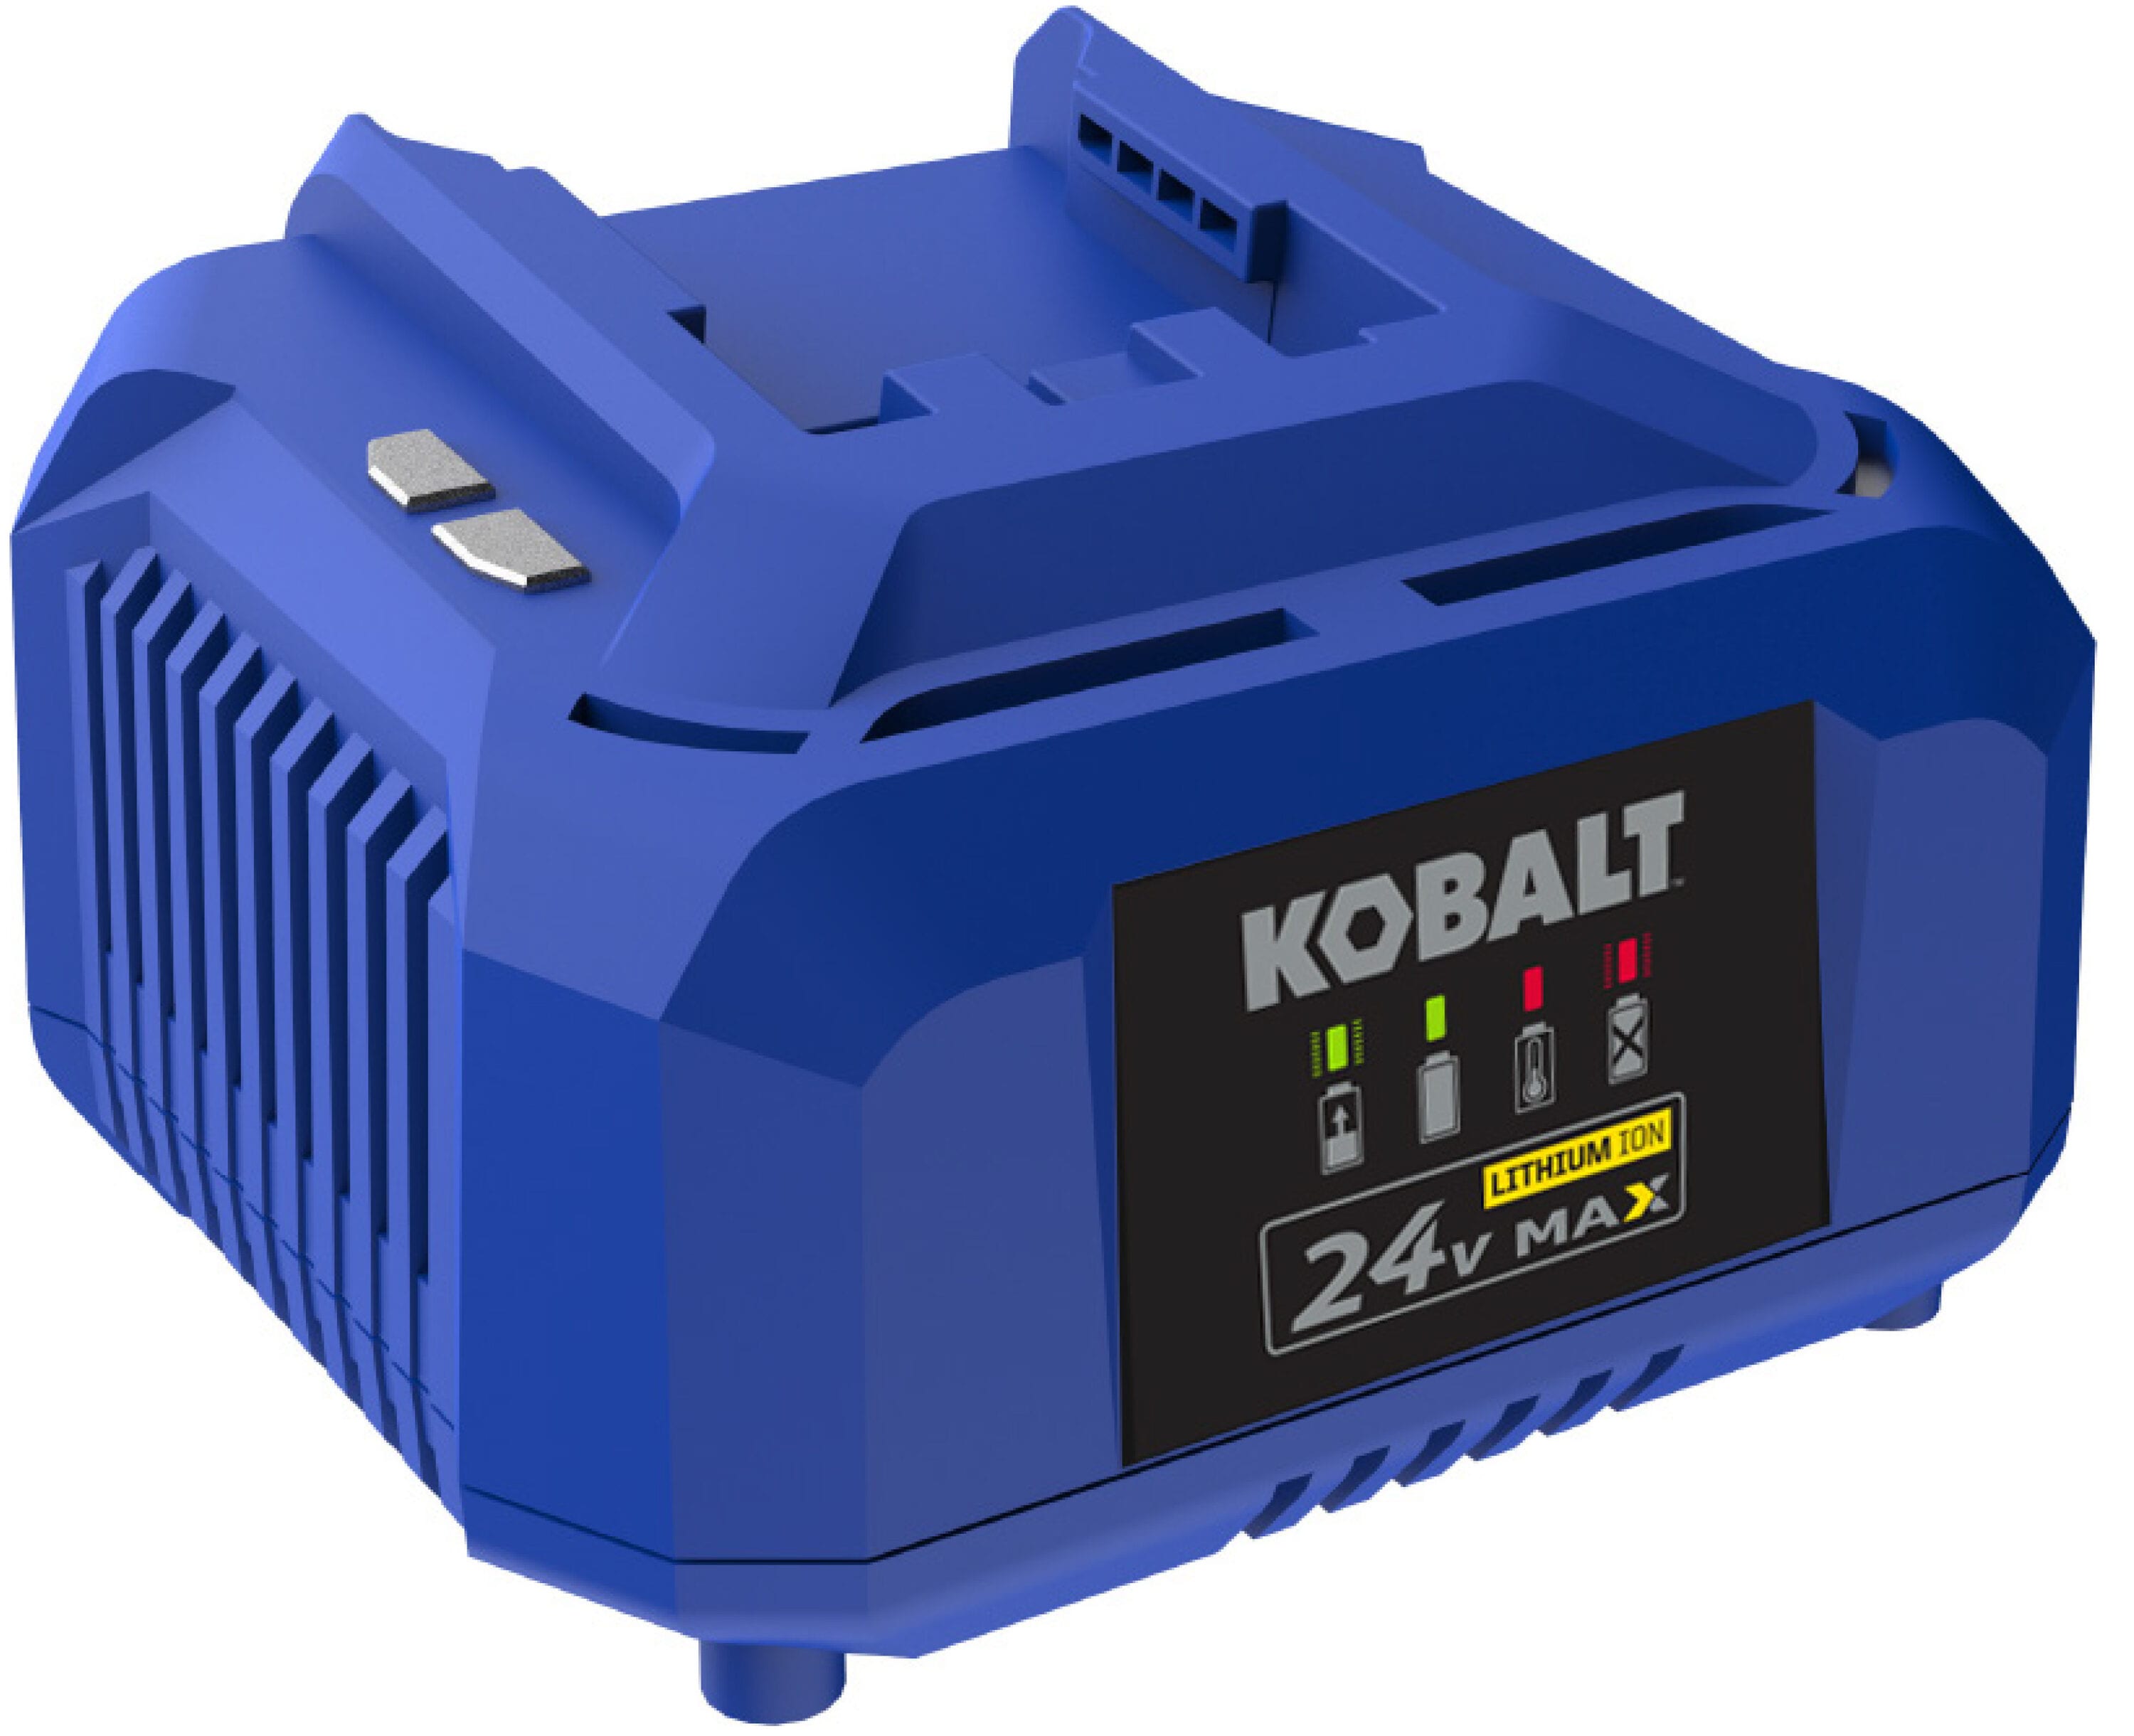 Kobalt 24V Heat gun